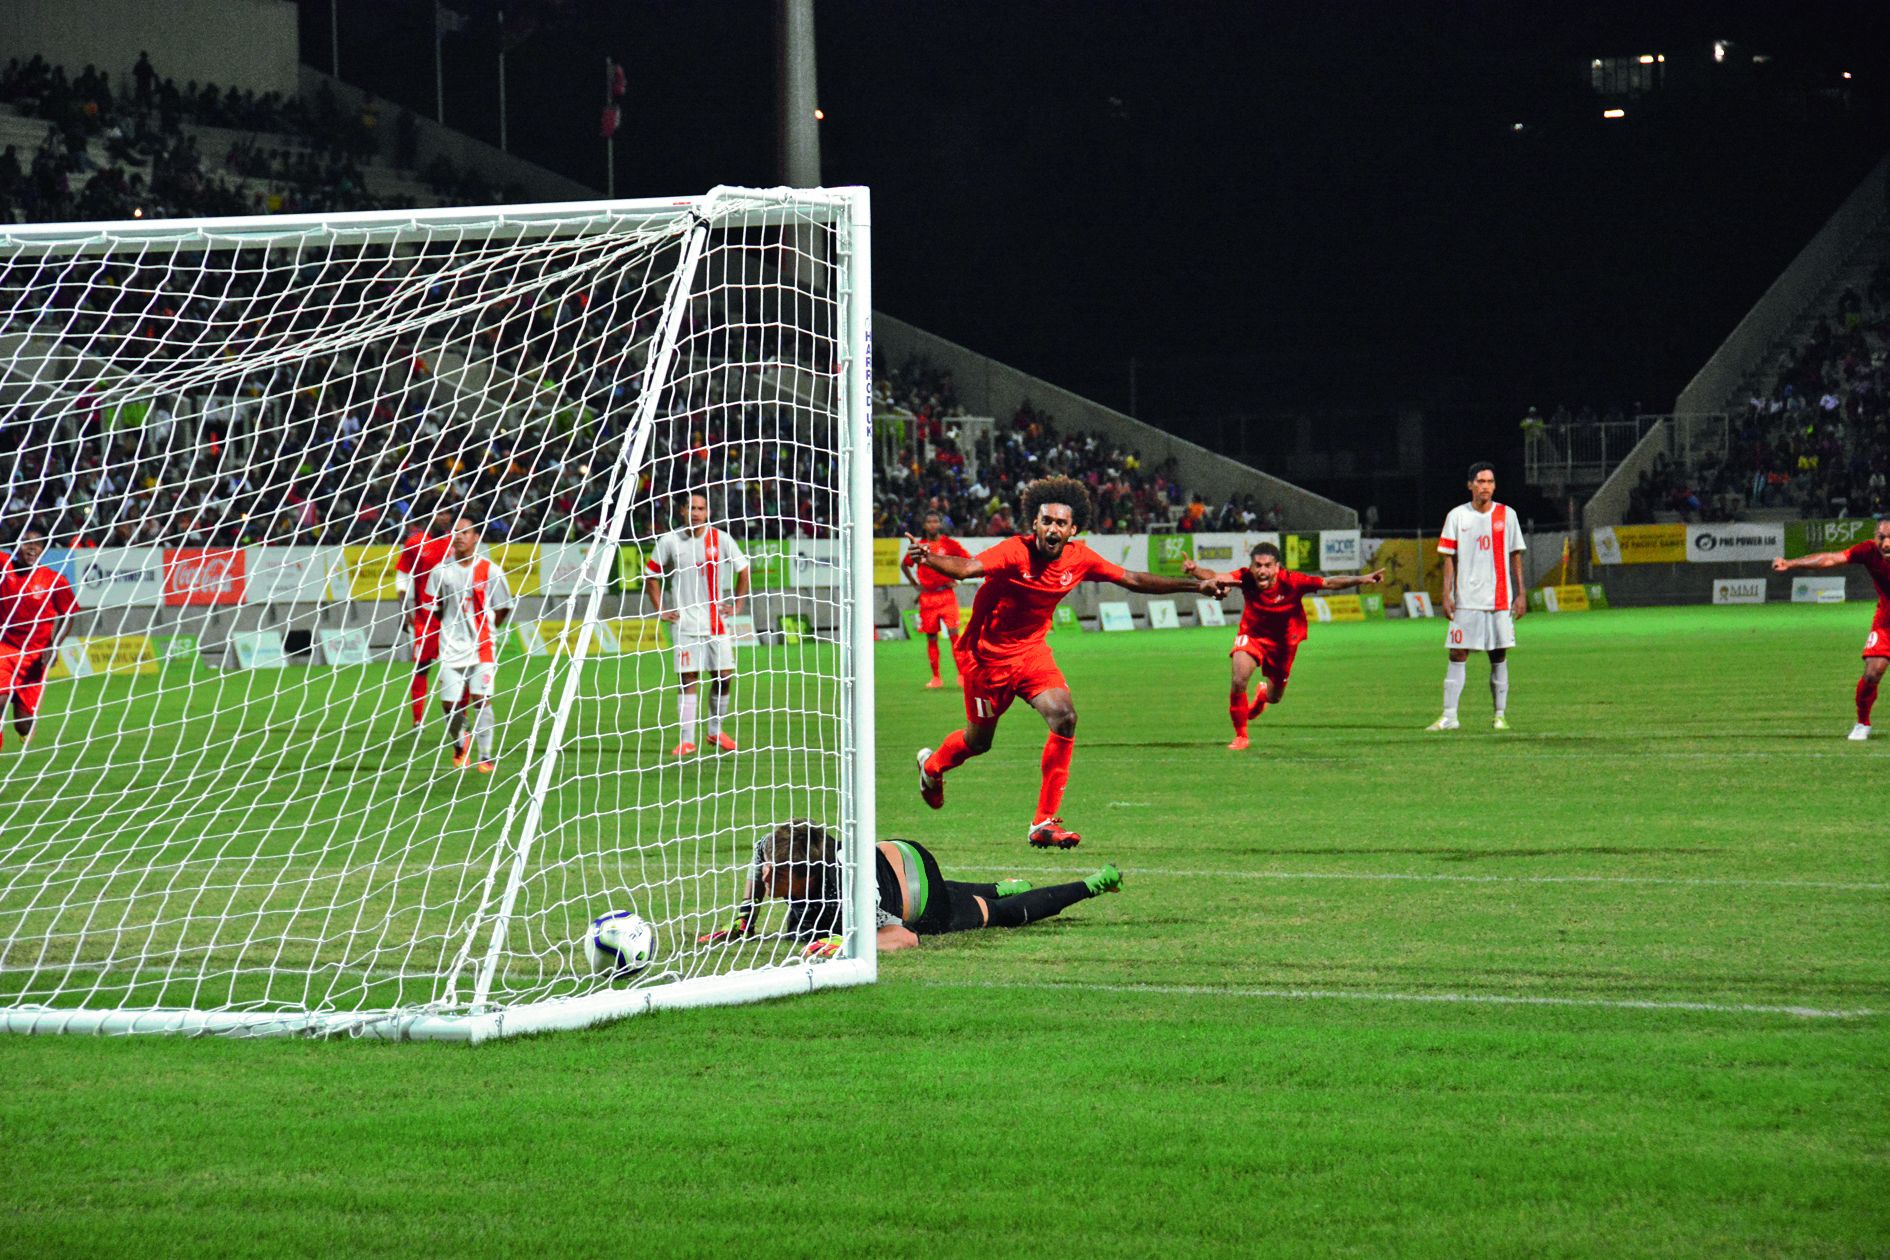 En 2015, la Calédonie avait ramené la médaille d’or après sa victoire face à Tahiti 2-0 en finale à Port Moresby. Photo Archives LNC Sports/MRB